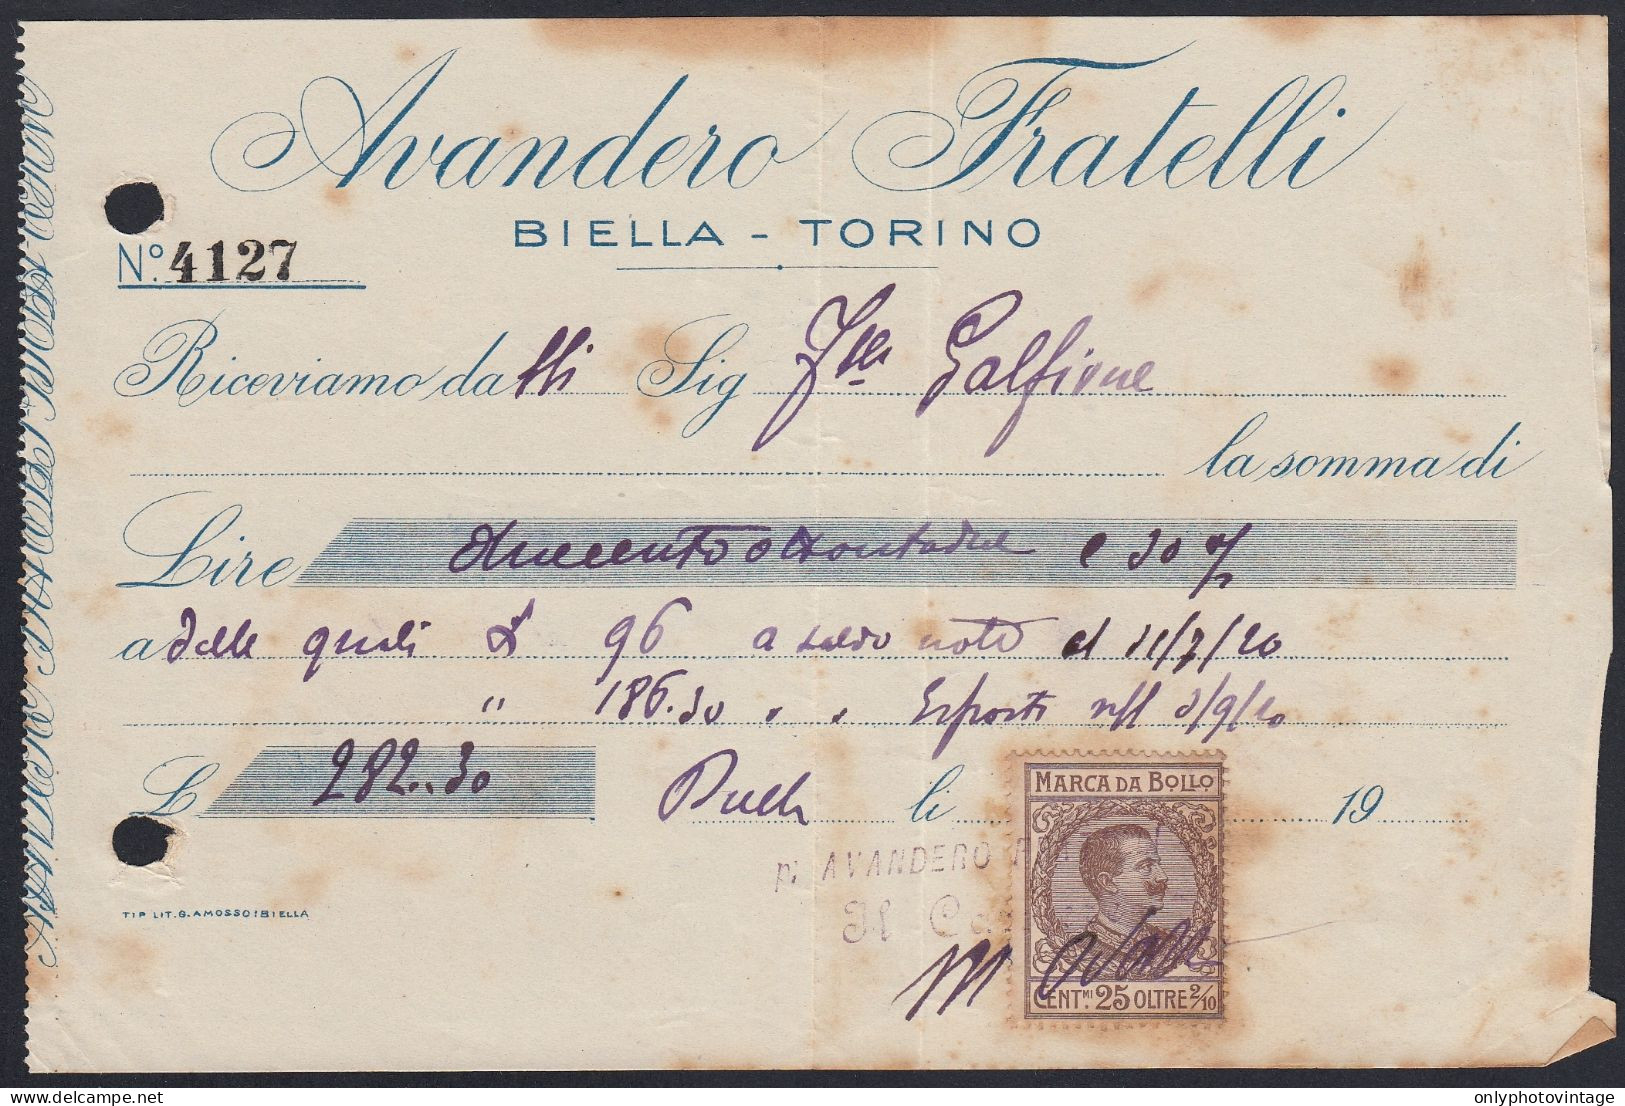 Biella 1920 - Avandero Fratelli - Marca Da Bollo - Ricevuta Pagamento - Italien